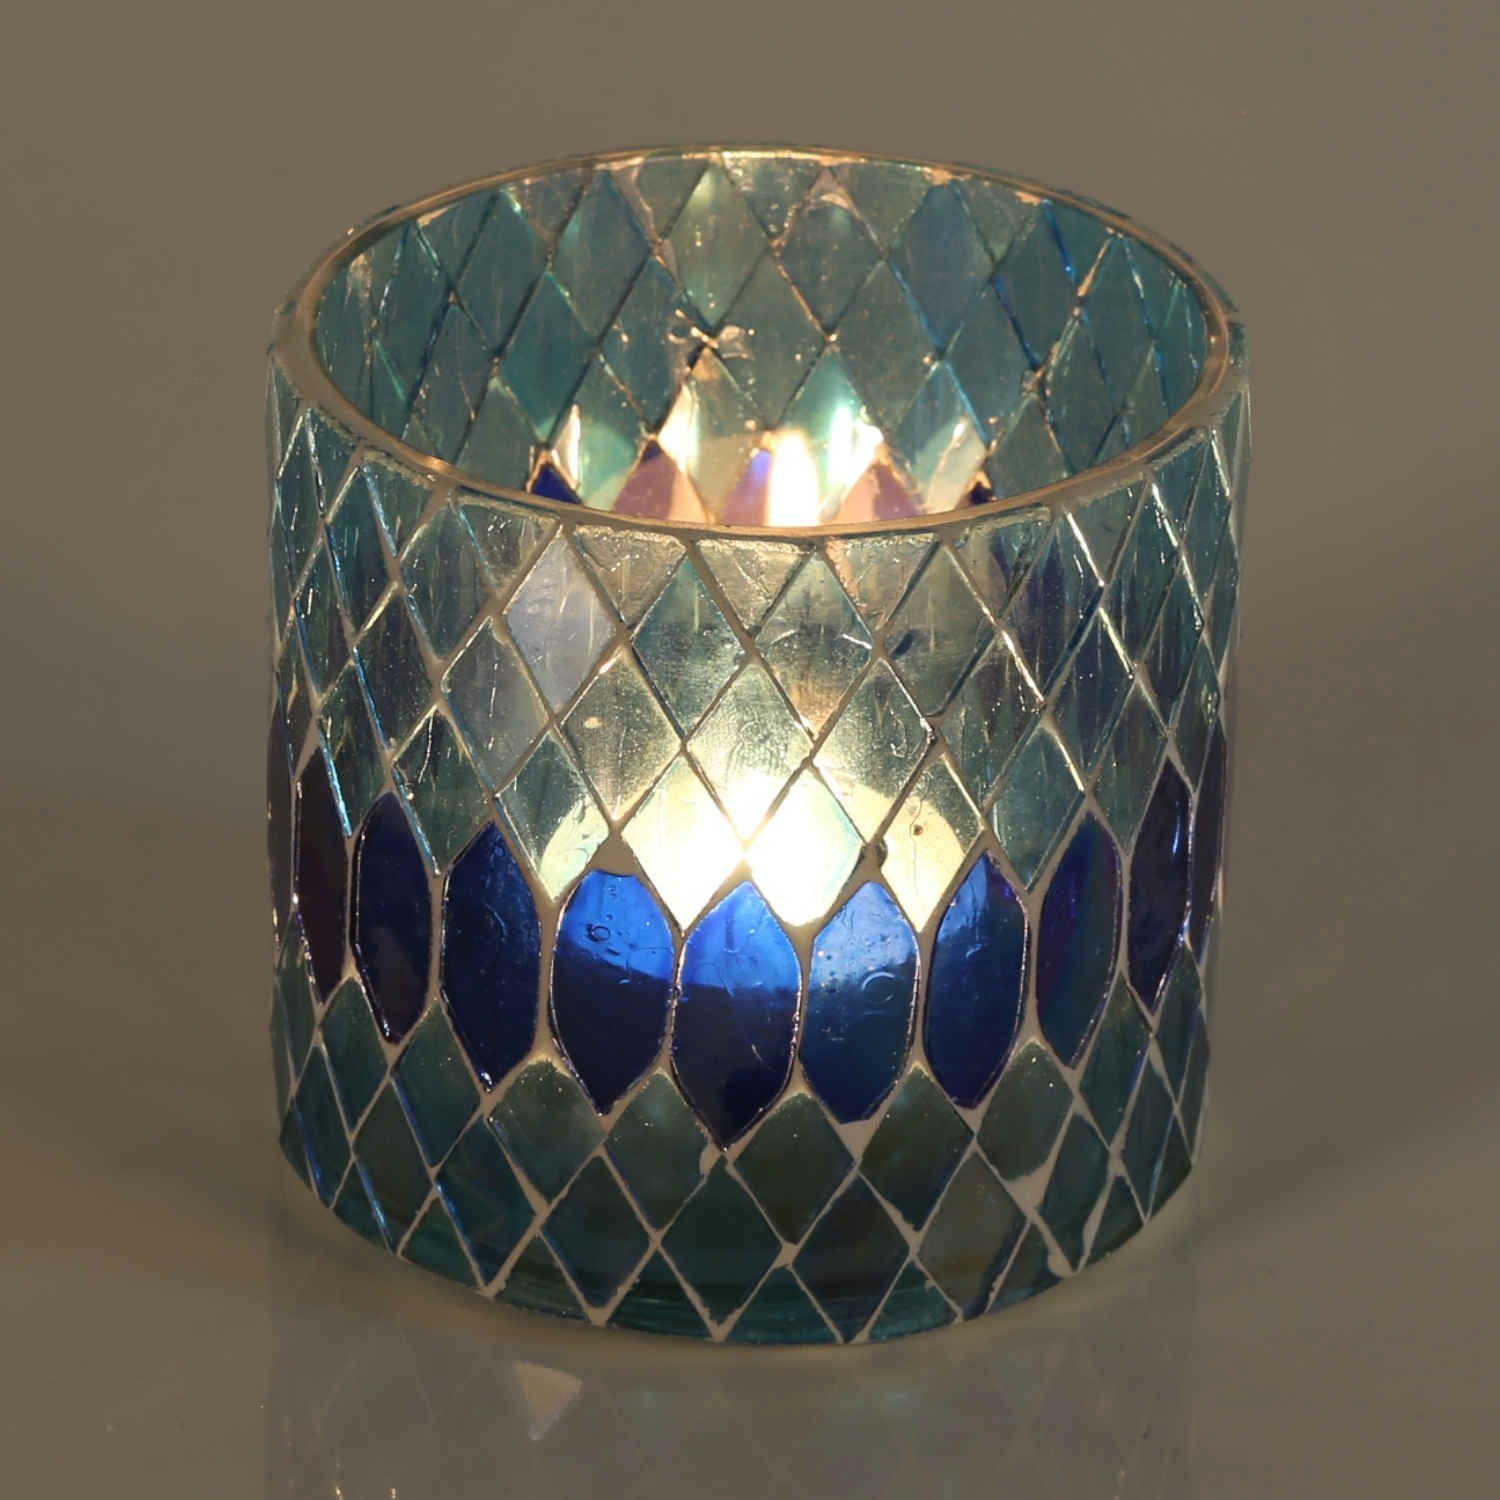 Casa Moro Windlicht Rayan Dunkelblau Teelichthalter Kerzenhalter Mosaik Glas handgefertigt (Glaswindlicht, Kerzenständer), Weihnachtsgeschenk